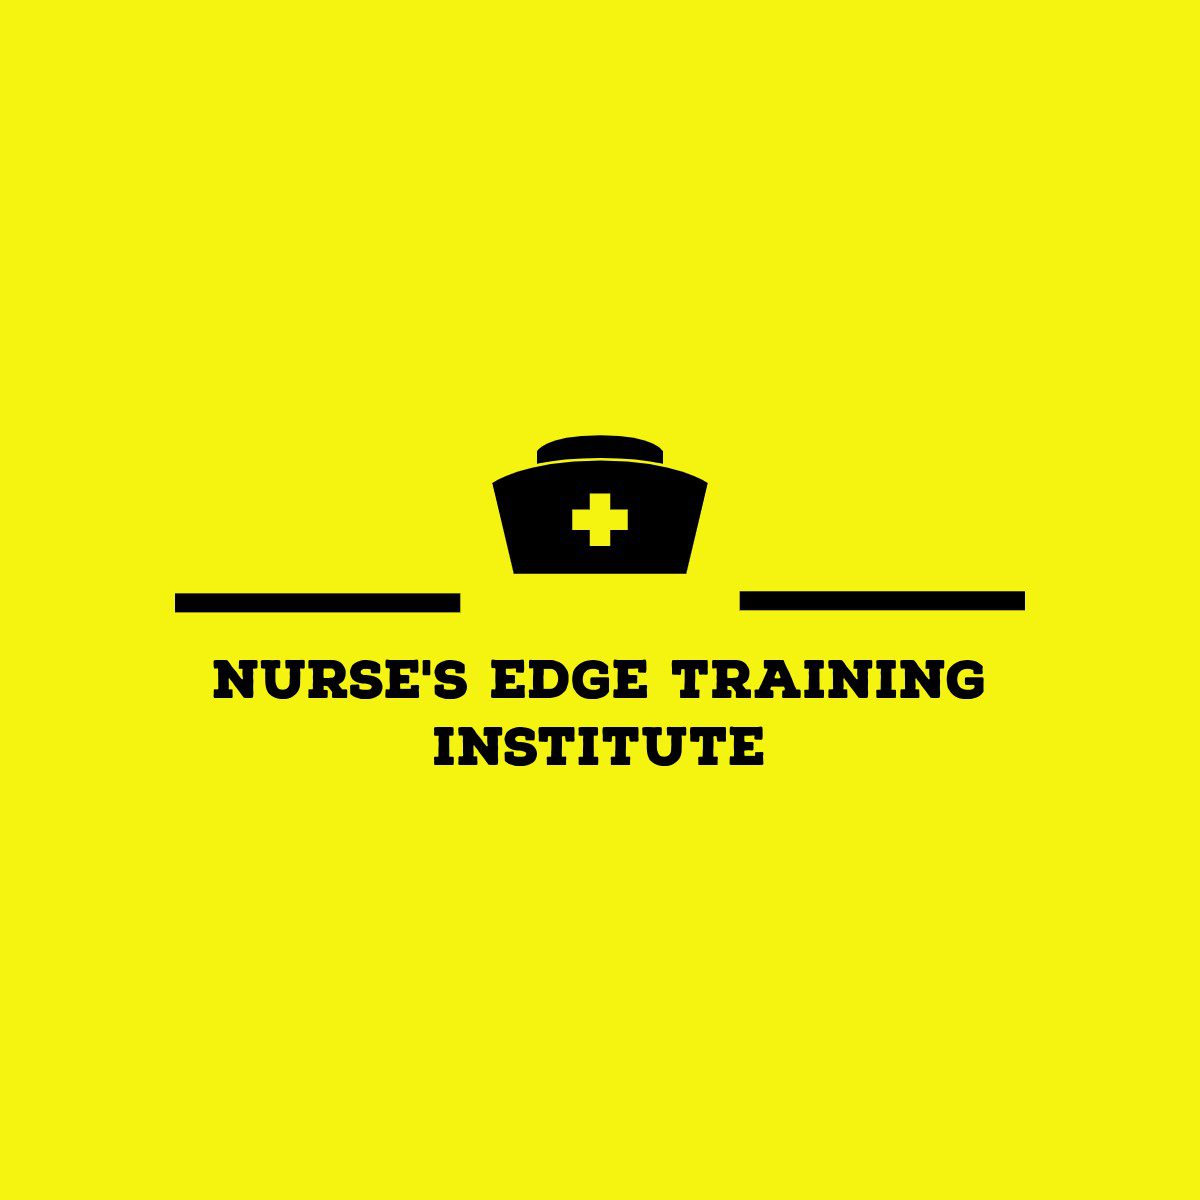 Nurse’s Edge Training Institute